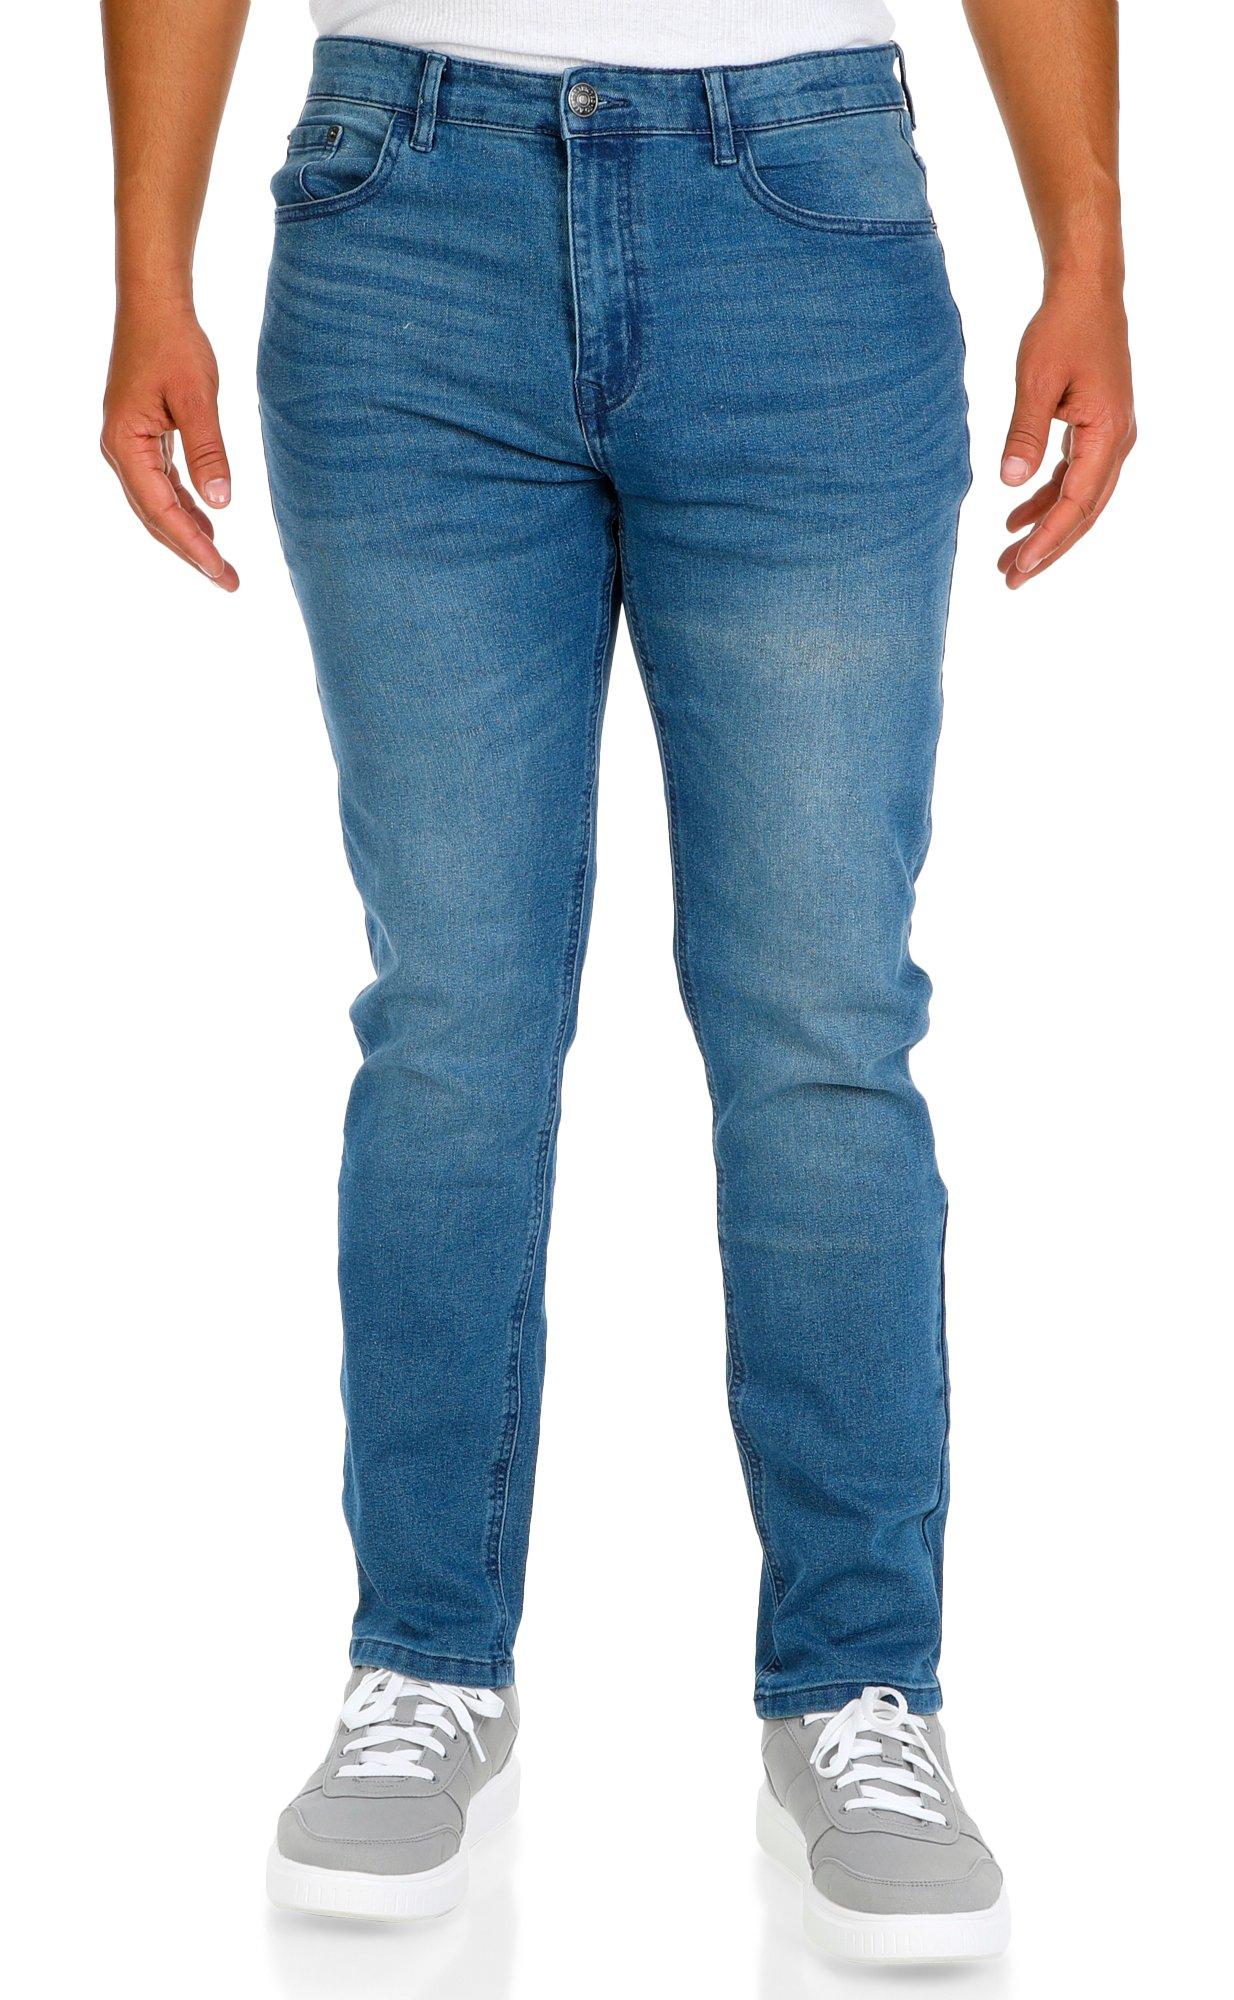 Men's Solid Slim Skinny Jeans